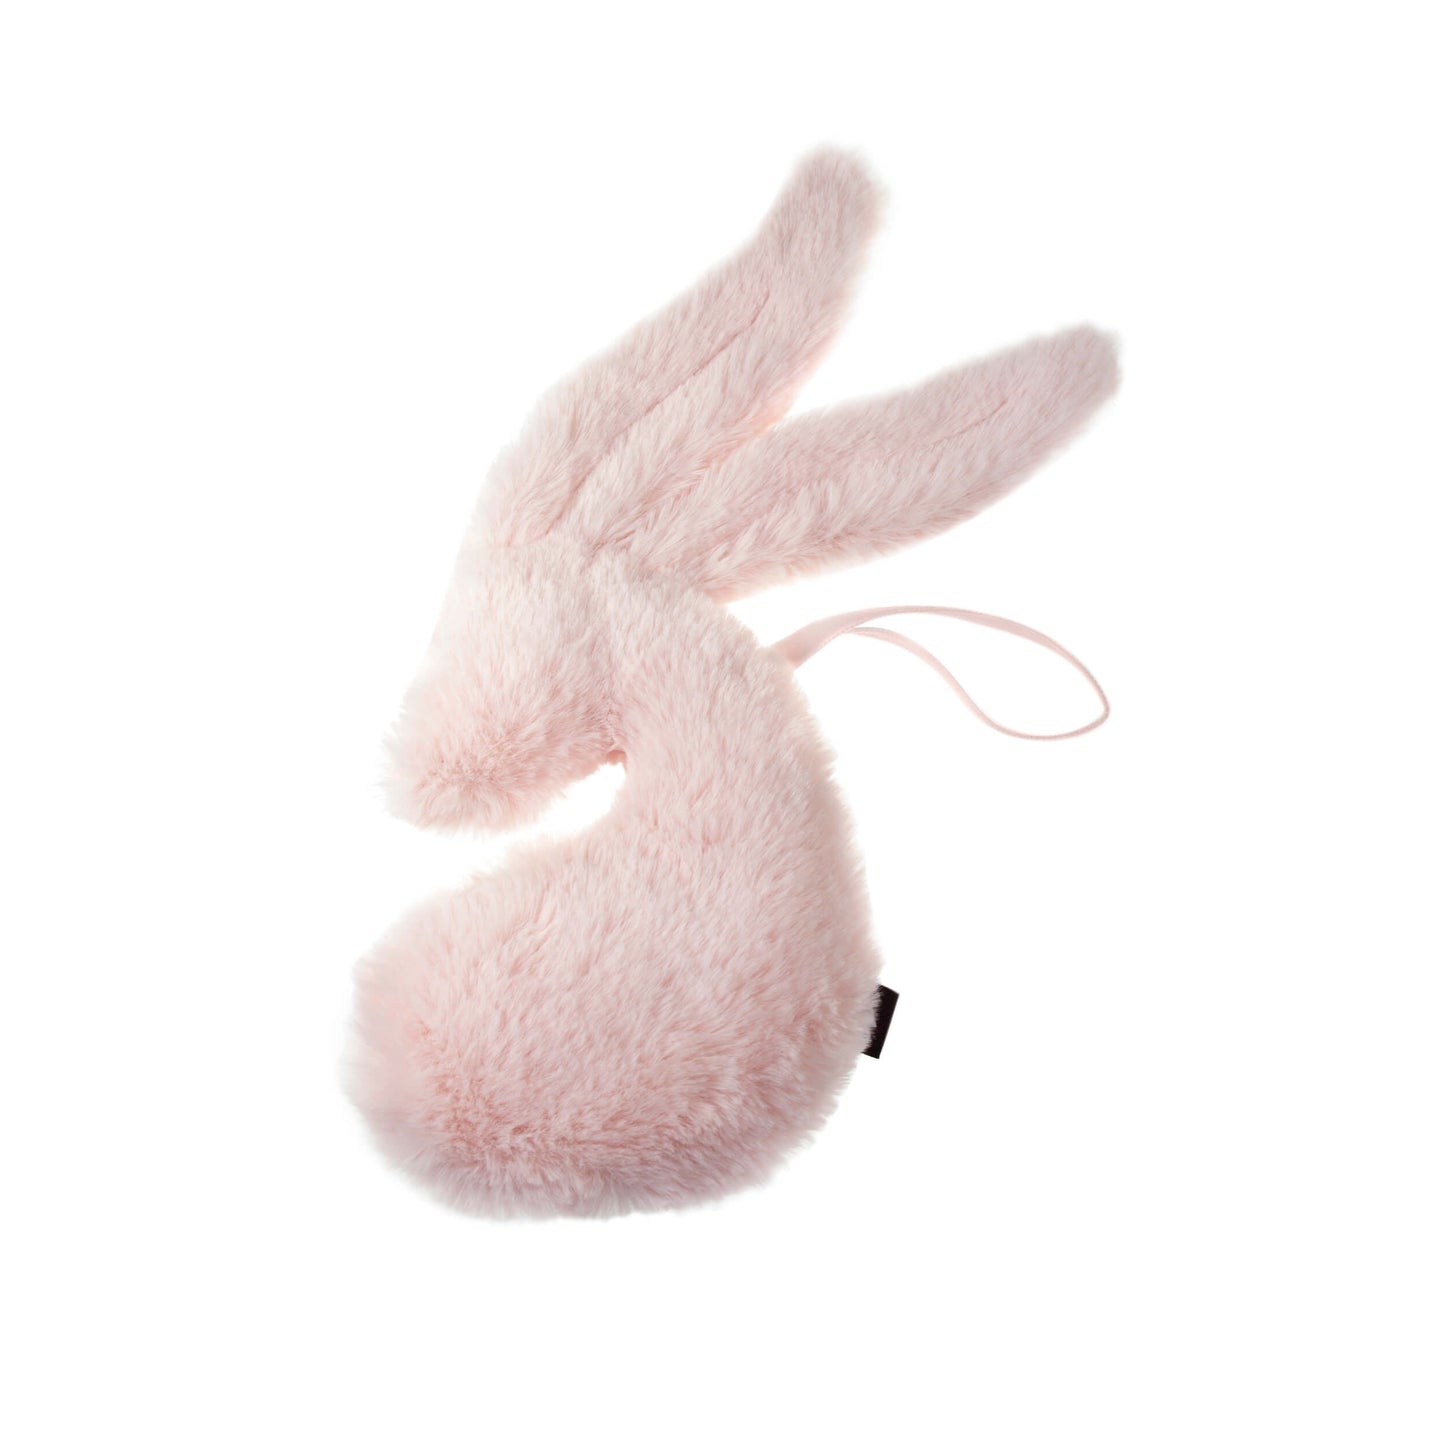 Mies & Co Snuggle Bunny